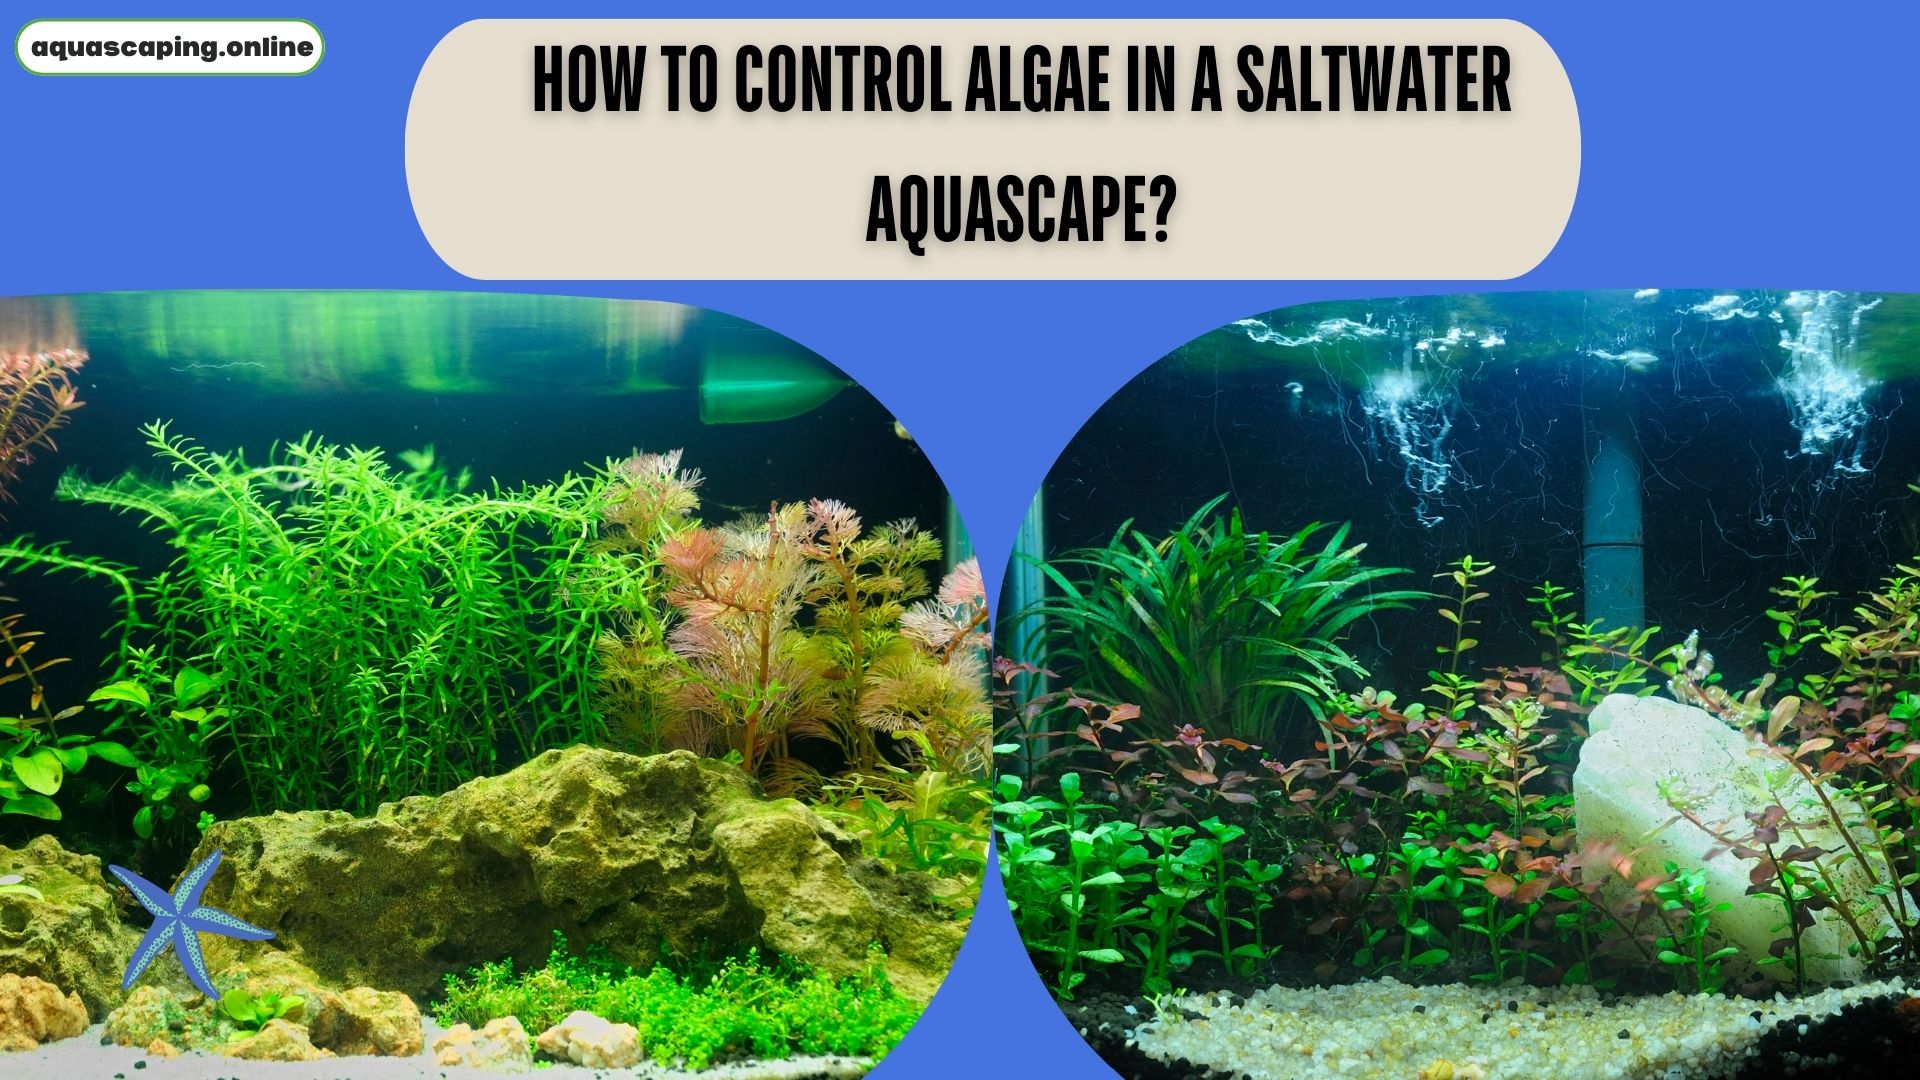 Algae in a freshwater aquascape